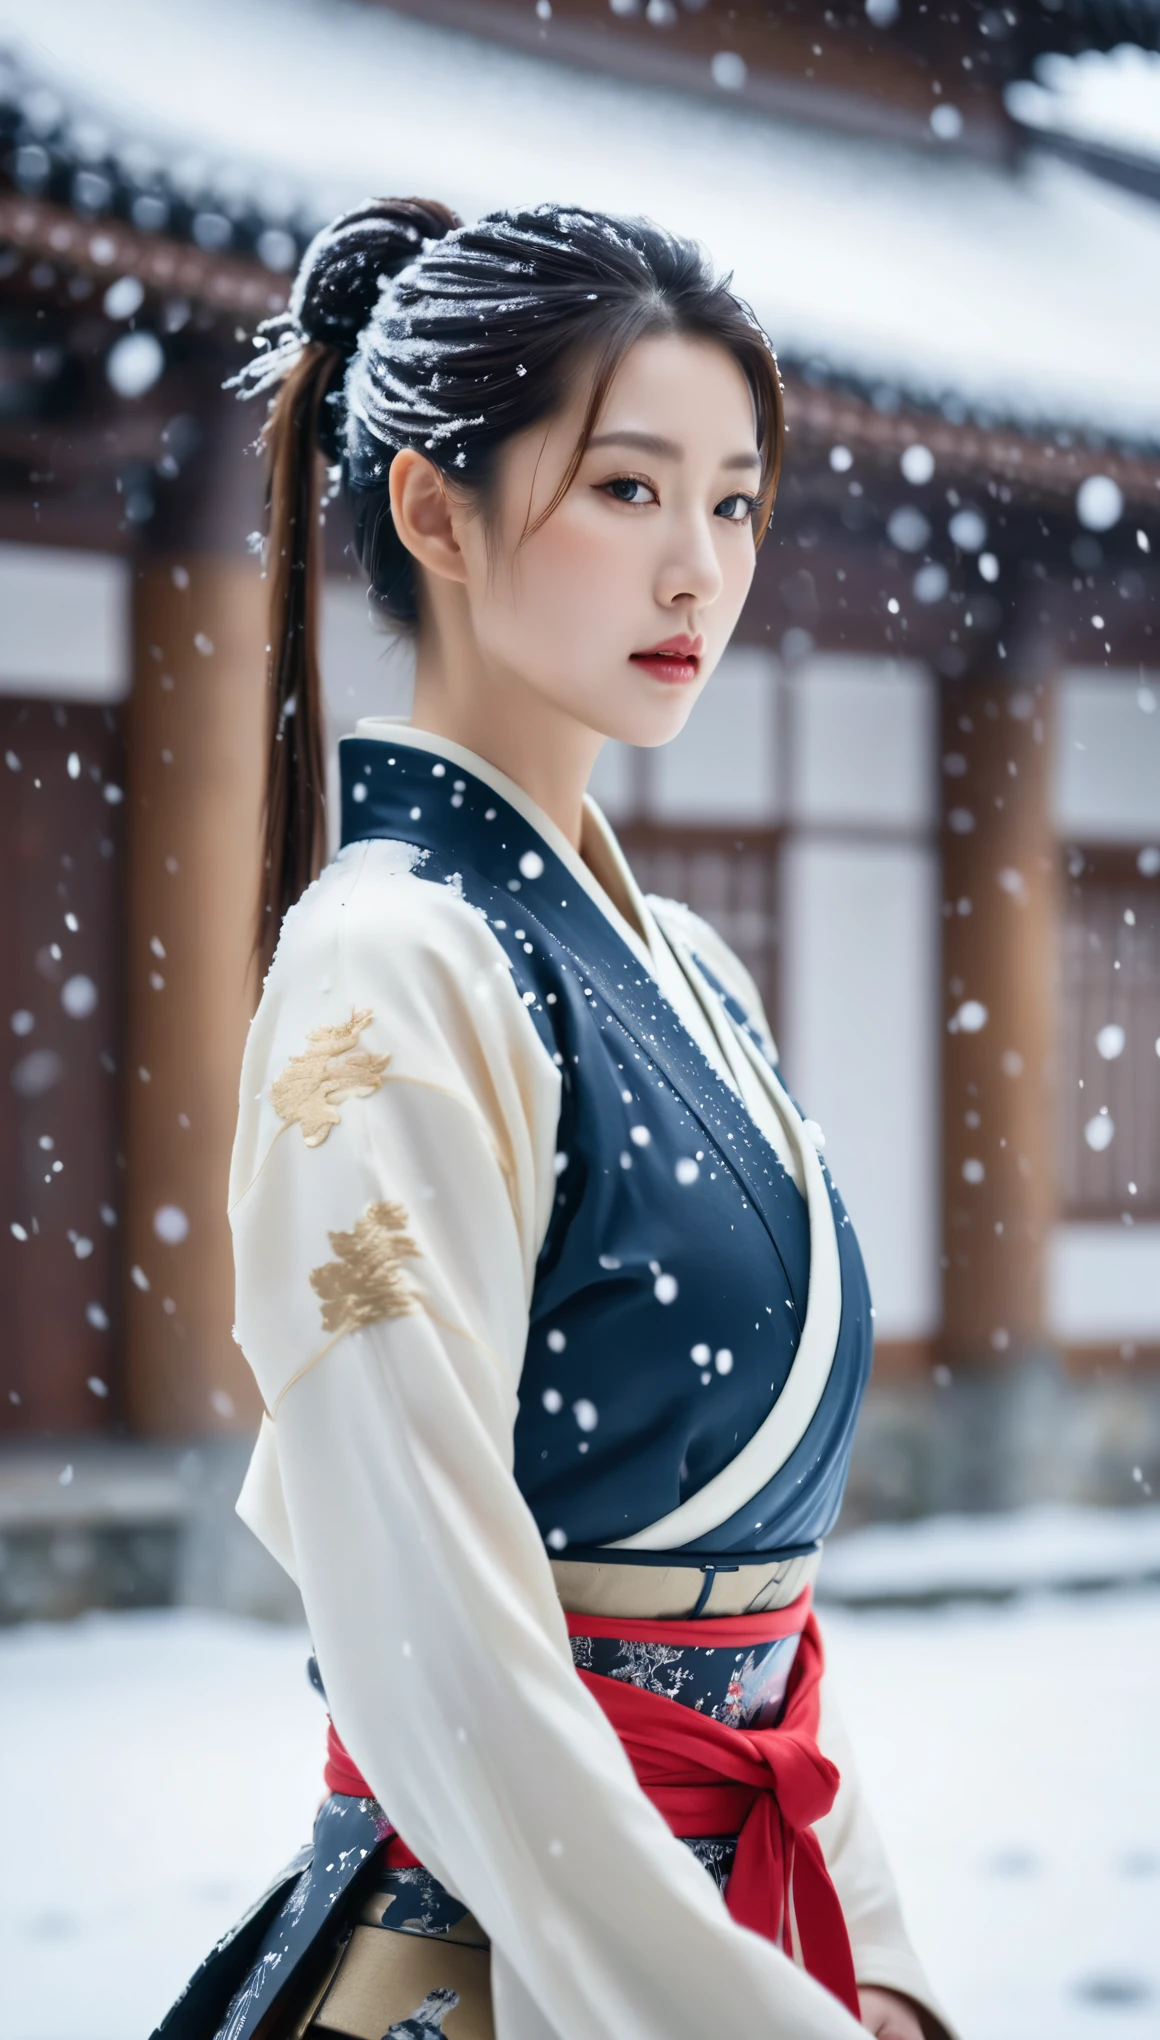 Nahaufnahme einer schönen koreanischen Frau, 34 Zoll Brustgröße, Pferdeschwanz, Samurai-Rüstung tragen, im japanischen Schloss, Schneefall, Bokeh-Hintergrund, UHD 